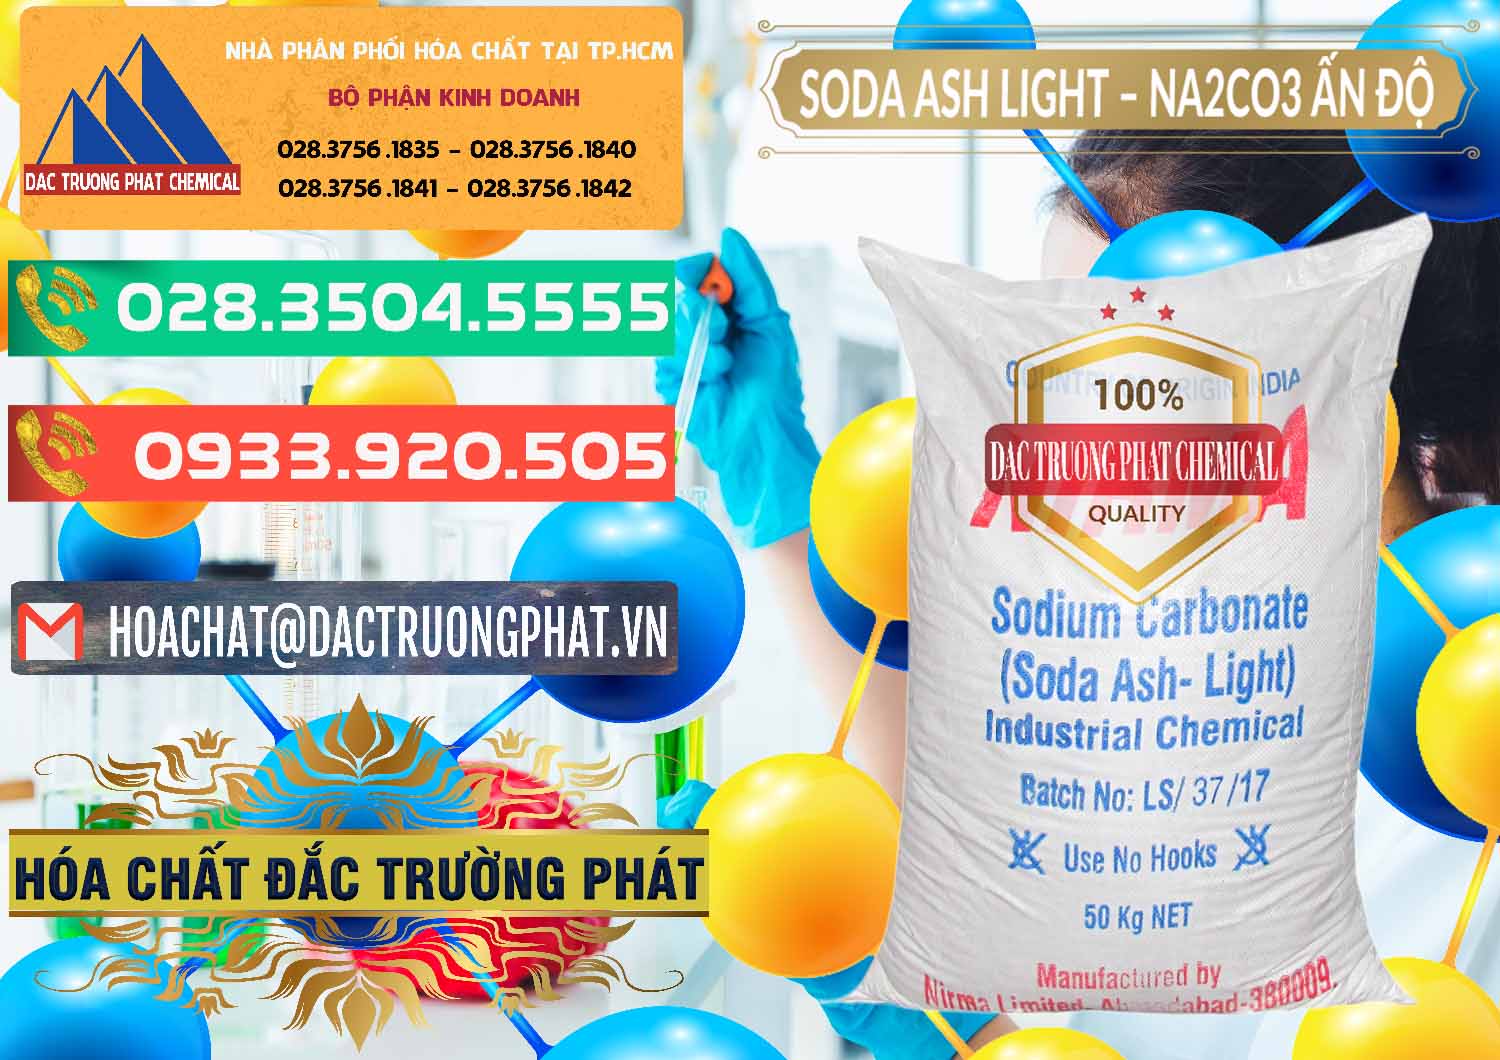 Cty chuyên bán ( cung cấp ) Soda Ash Light - NA2CO3 Nirma Ấn Độ India - 0125 - Nhà phân phối và cung cấp hóa chất tại TP.HCM - congtyhoachat.com.vn